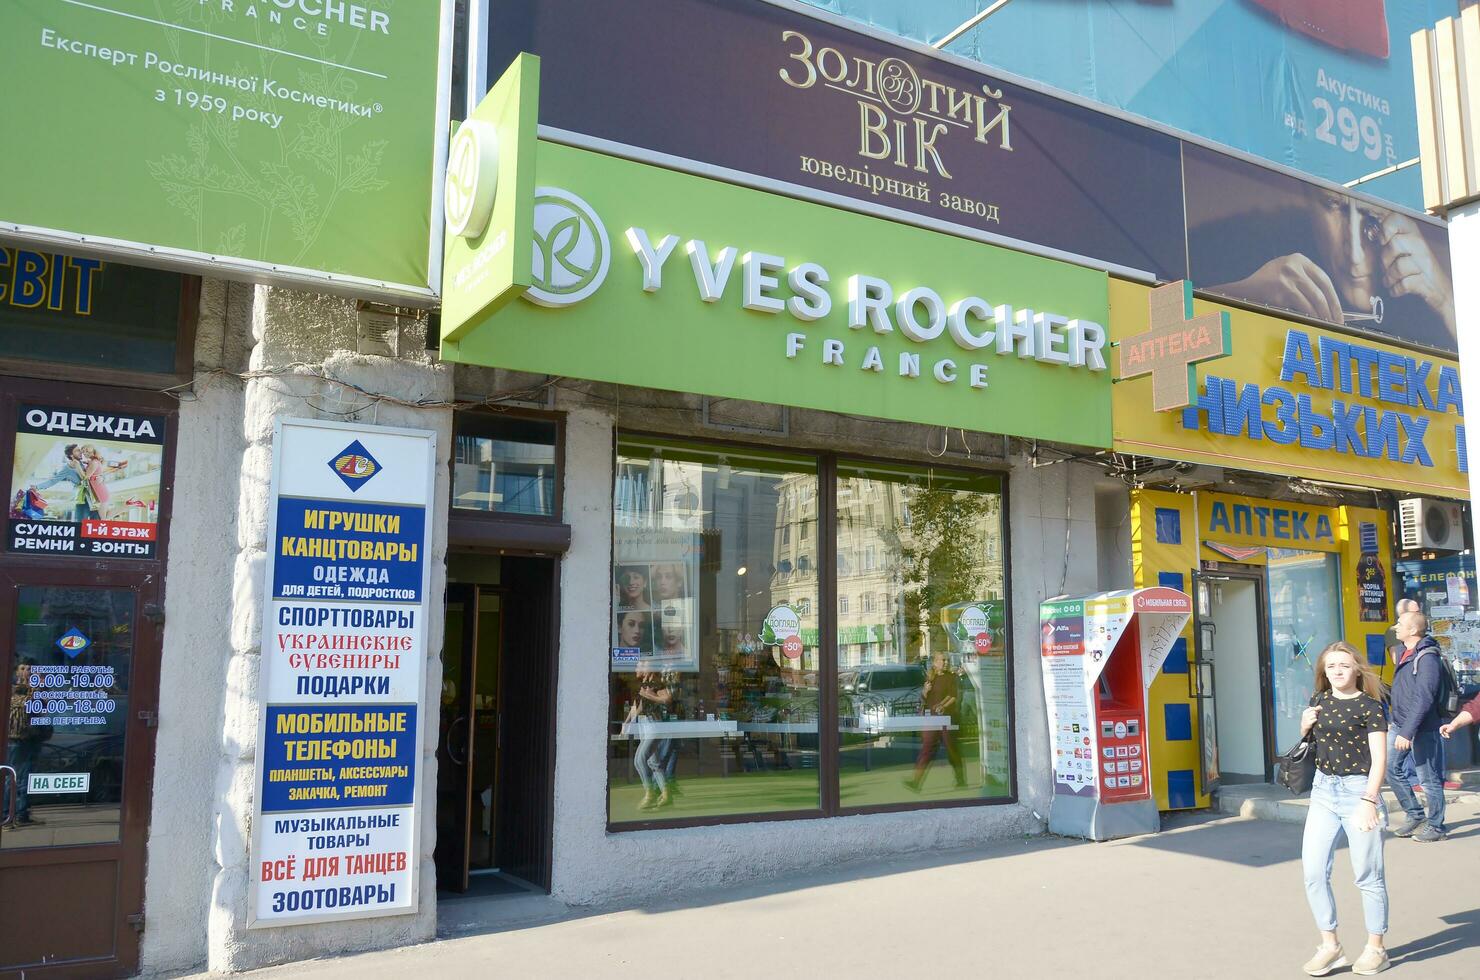 Kharkov, ukraina - oktober 20, 2019 yves rocher boutique i kharkiv. yves rocher är värld känd kosmetika och skönhet varumärke foto